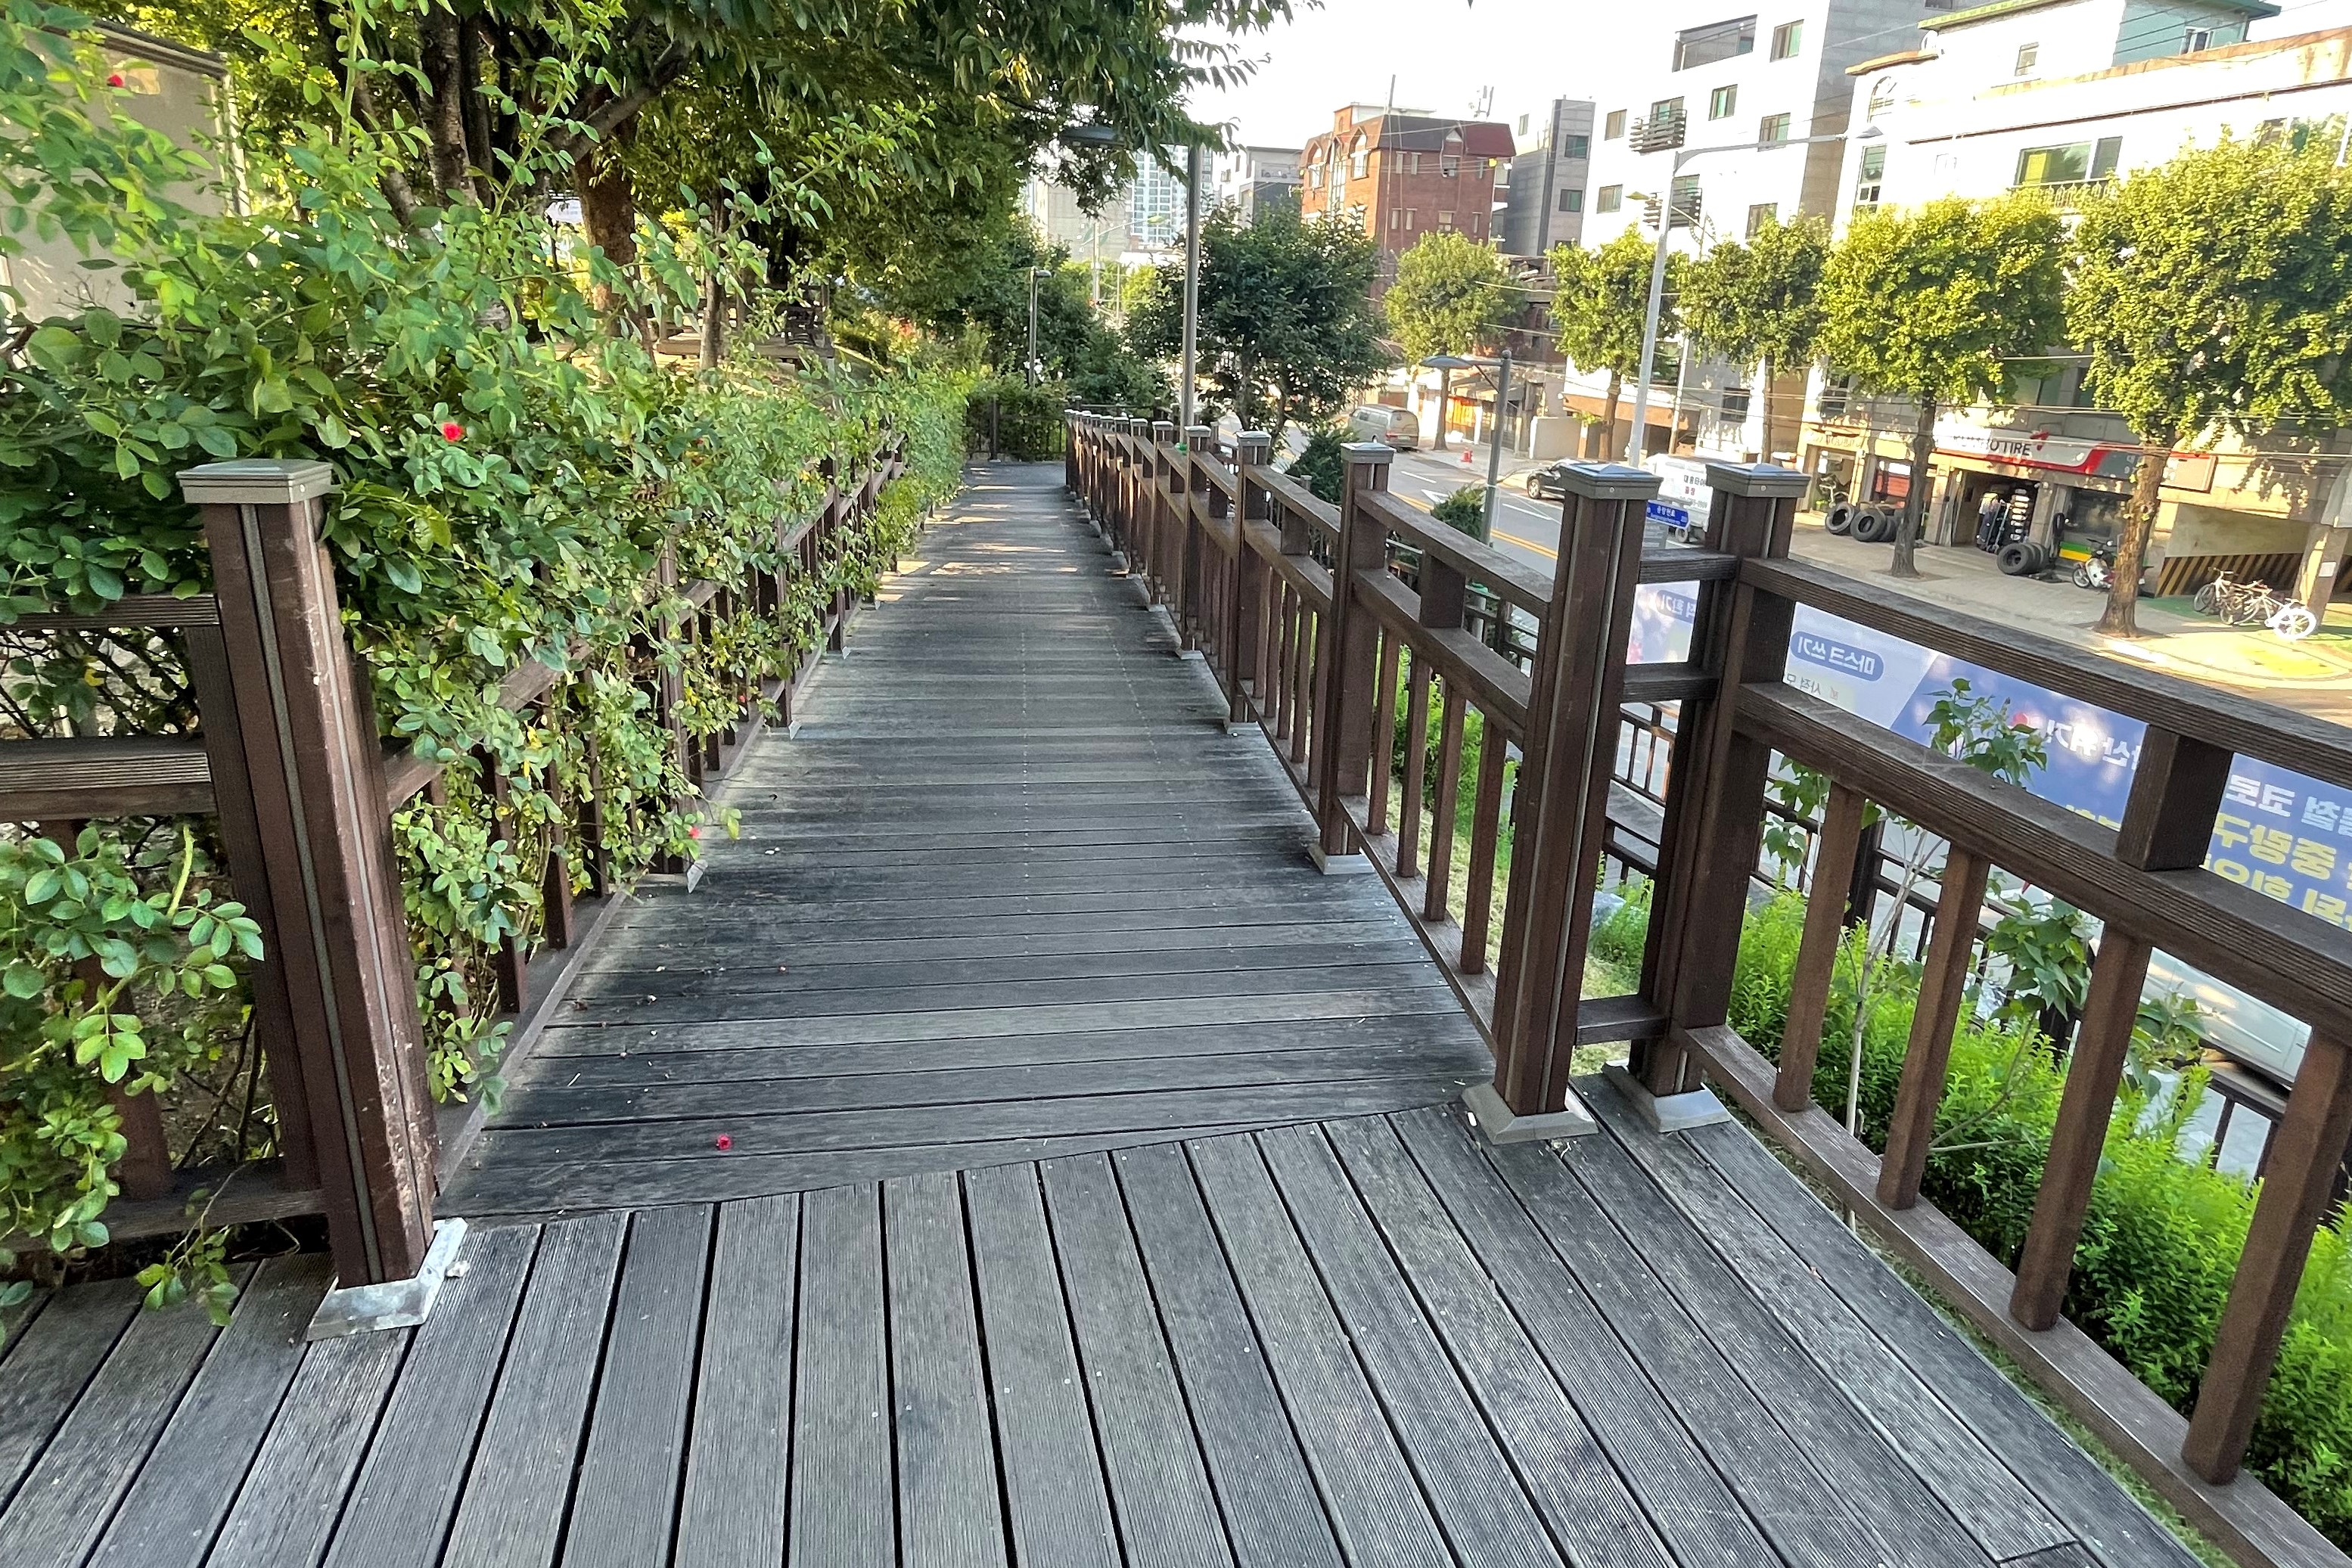 접근로/주출입구0 : 서울장미공원(중랑장미공원) 접근로 전경2